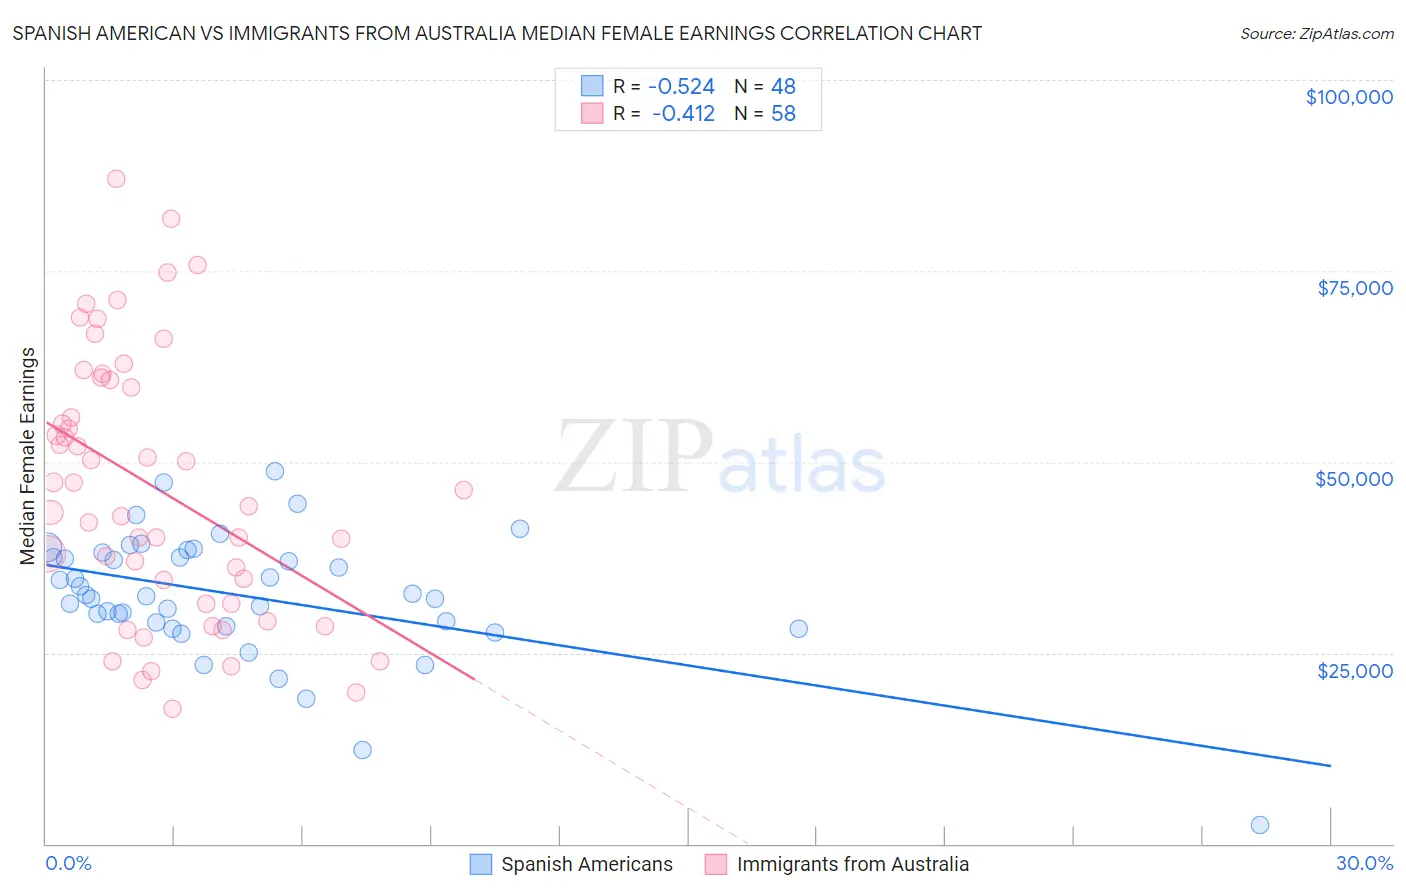 Spanish American vs Immigrants from Australia Median Female Earnings